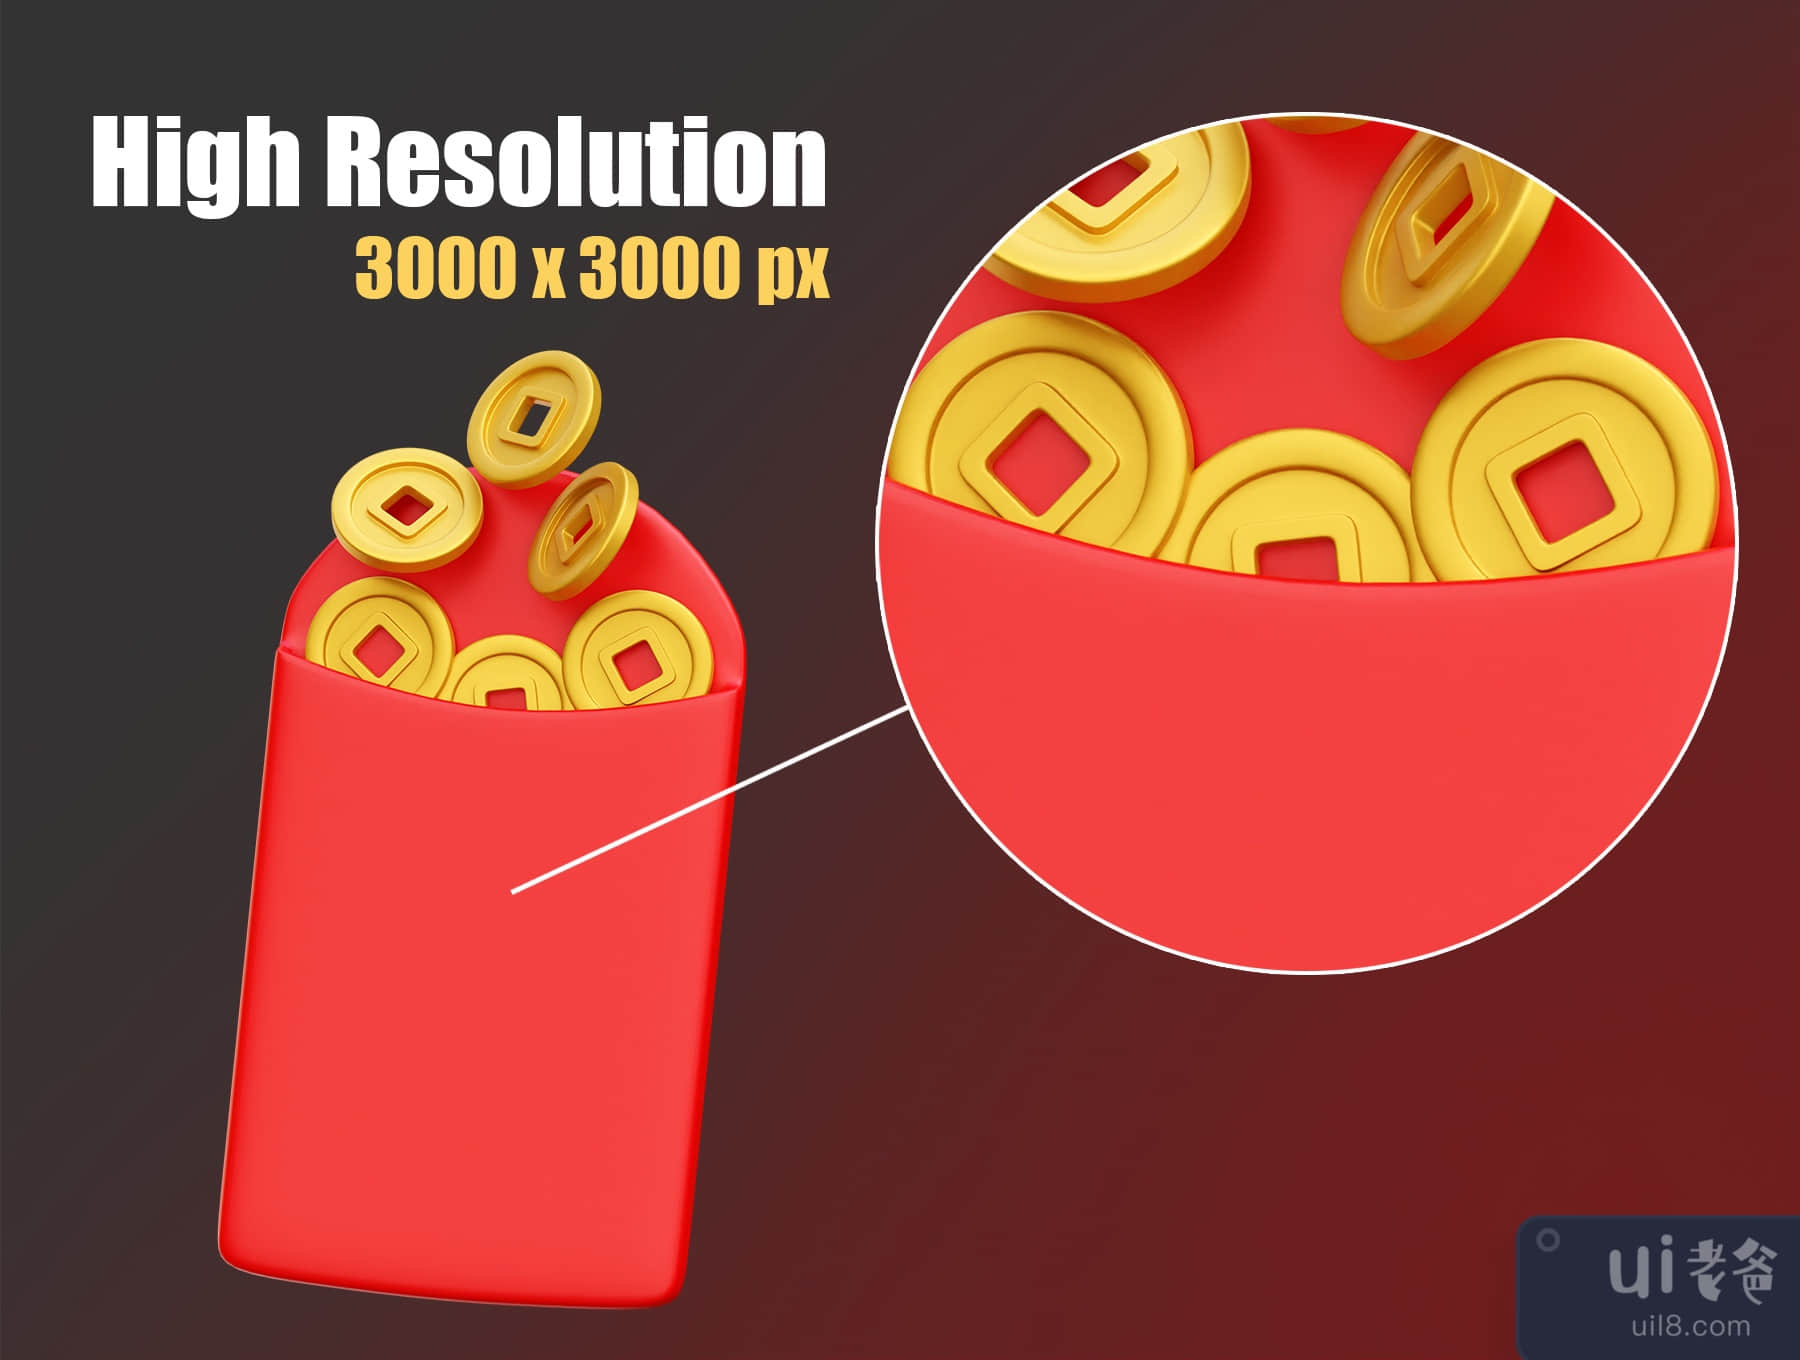 中国新年的3D图标插图 (Chinese New Year 3D Icon Illustrations)插图2